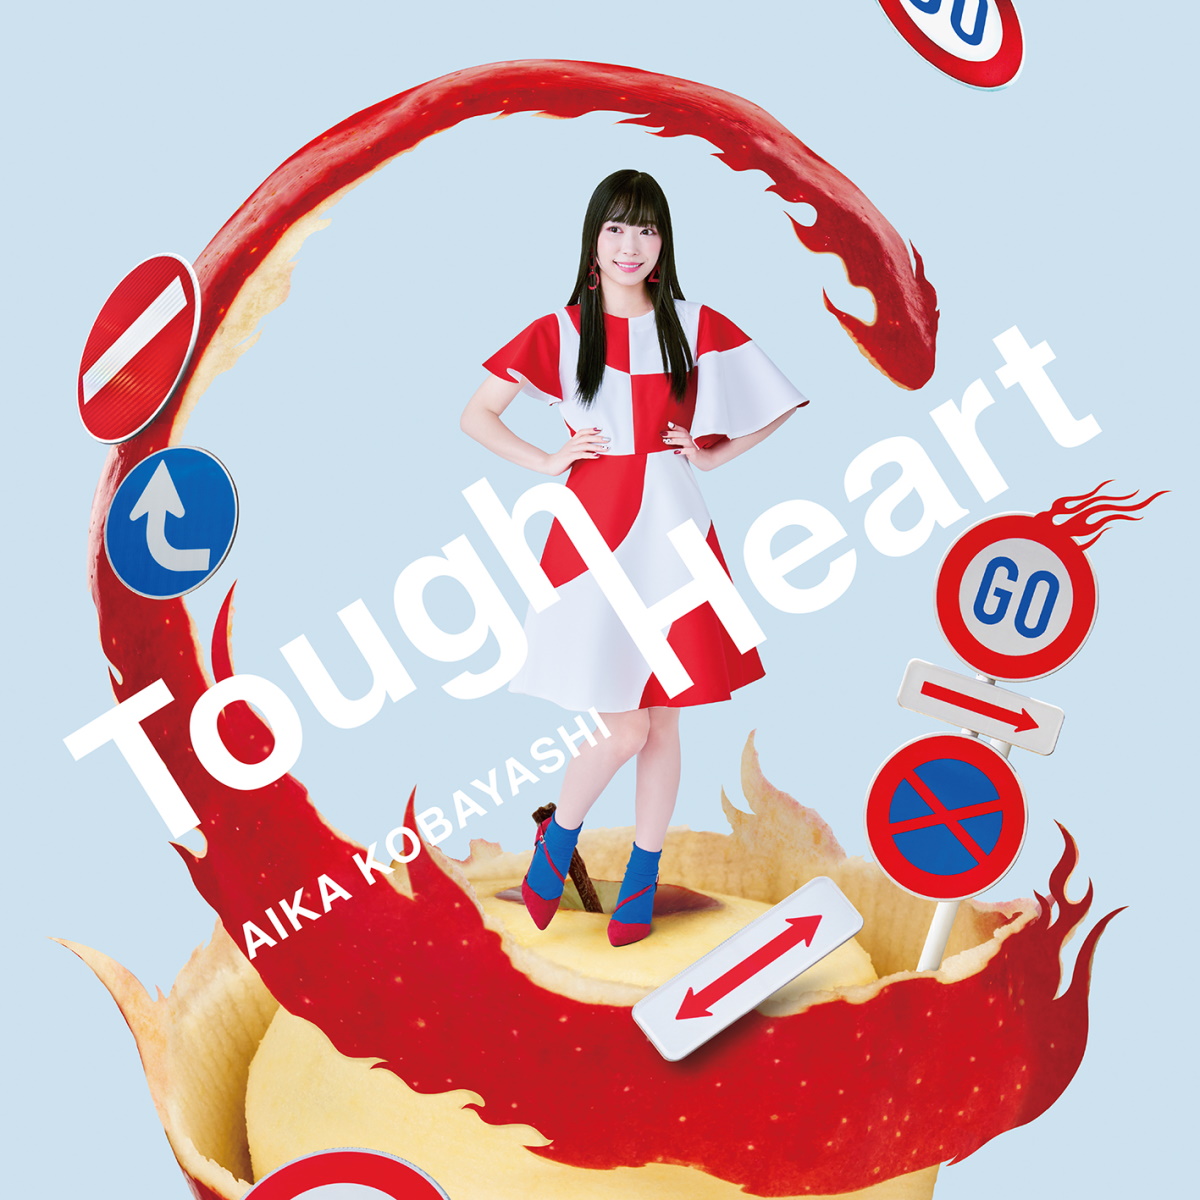 『小林愛香 - Tough Heart』収録の『Tough Heart』ジャケット